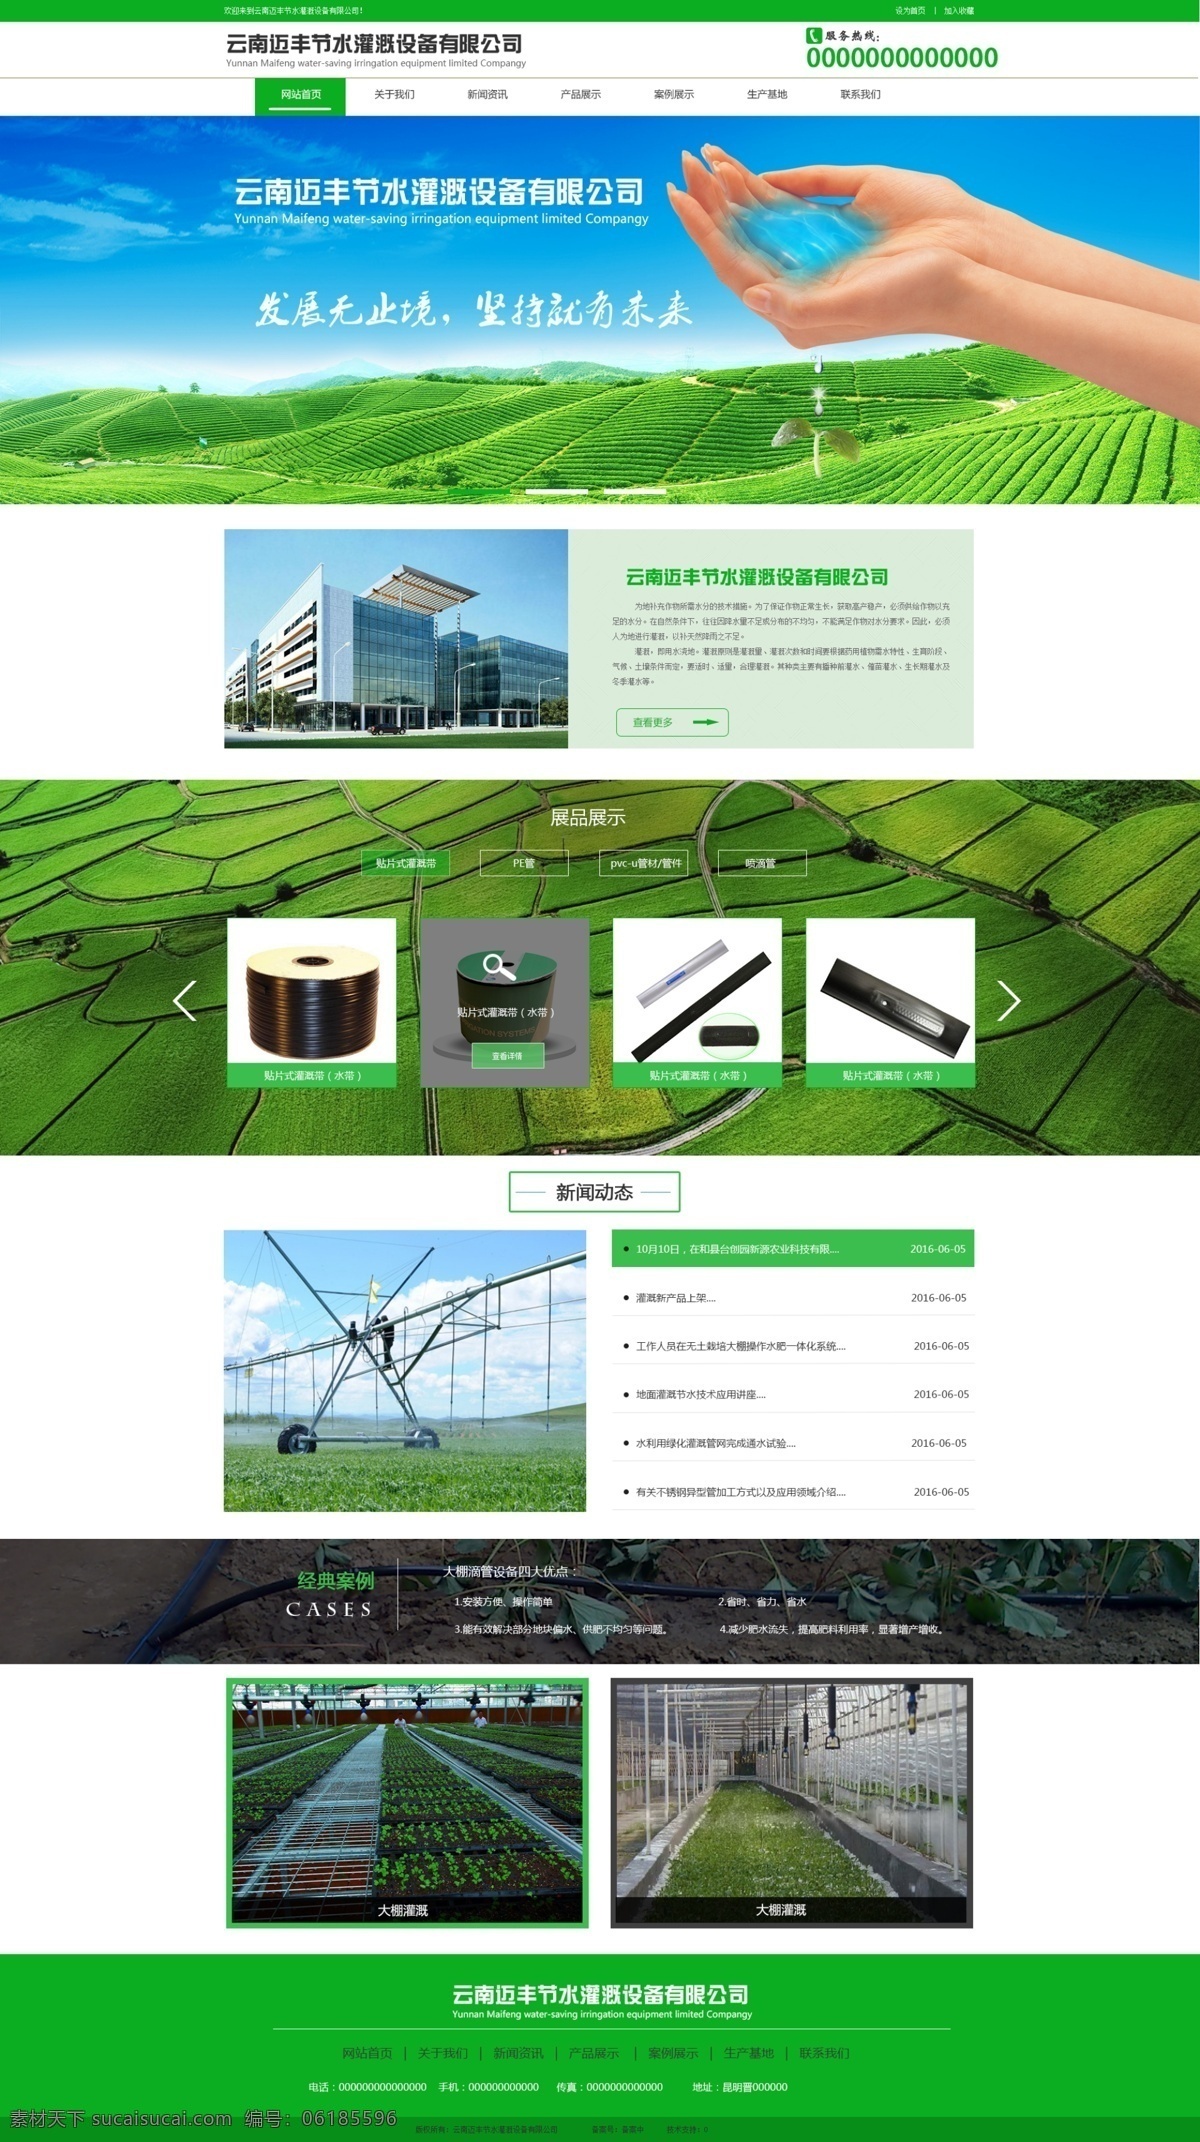 企业网站 网站首页 网站首页设计 企业网站首页 网站设计 web 界面设计 中文模板